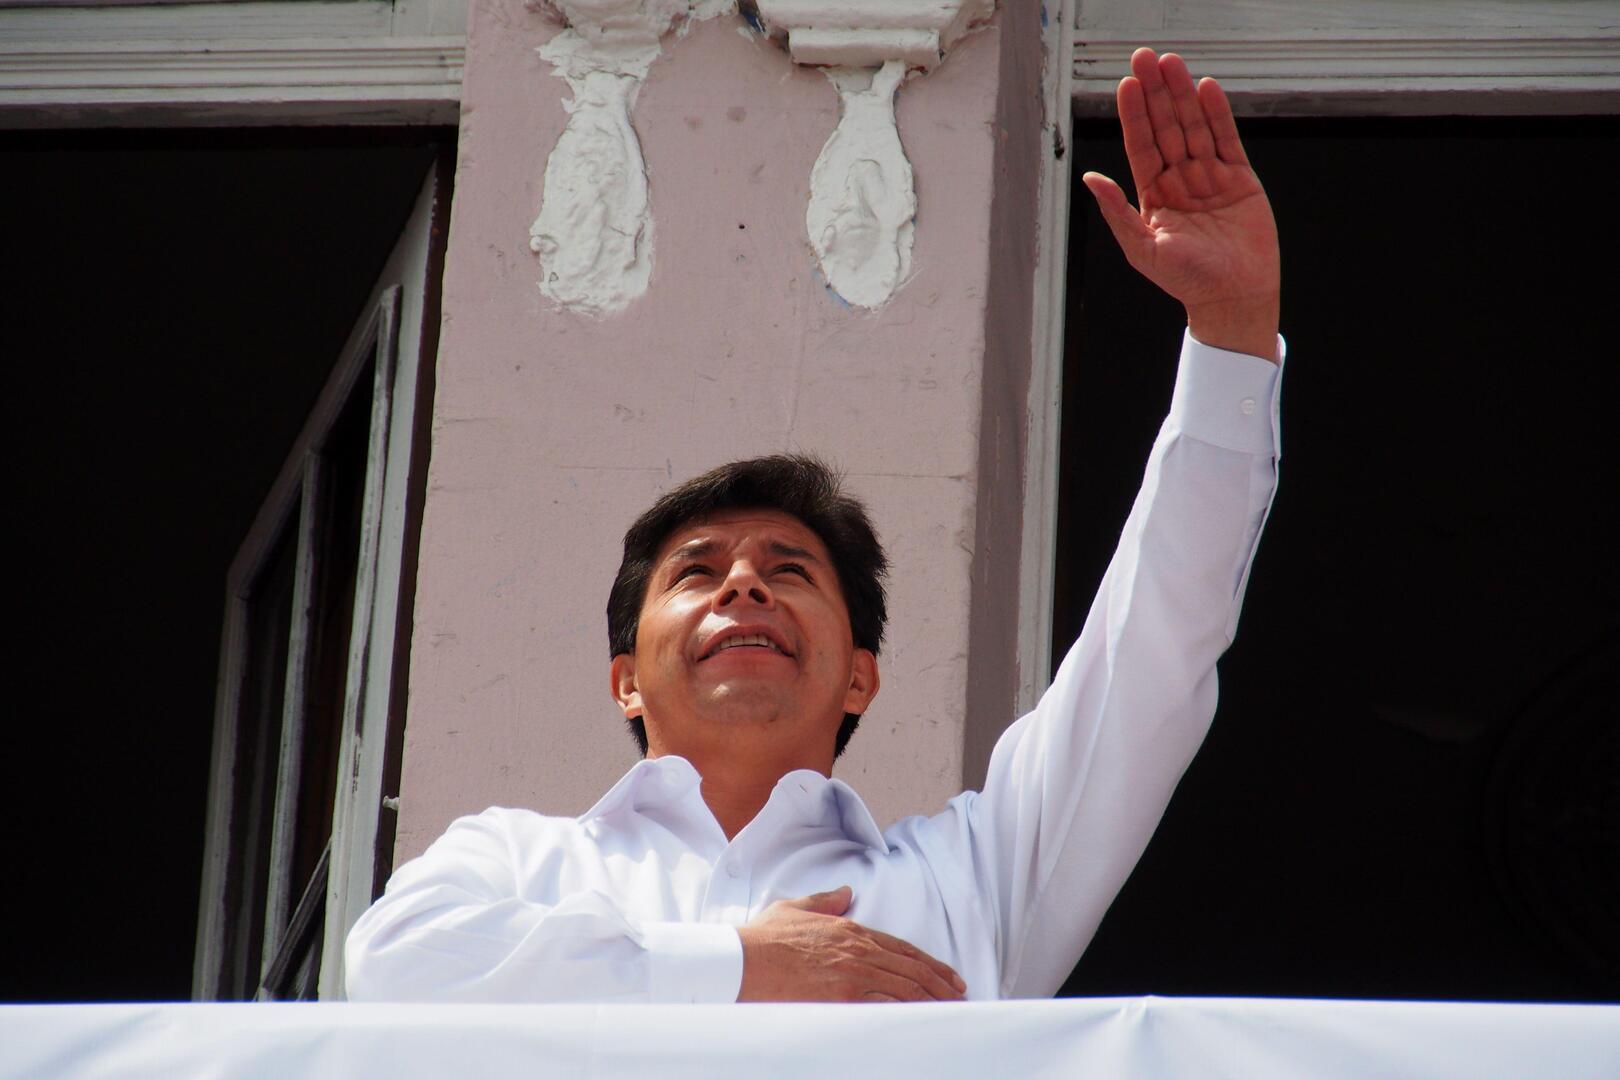 المكسيك تمنح اللجوء لعائلة رئيس بيرو المعزول